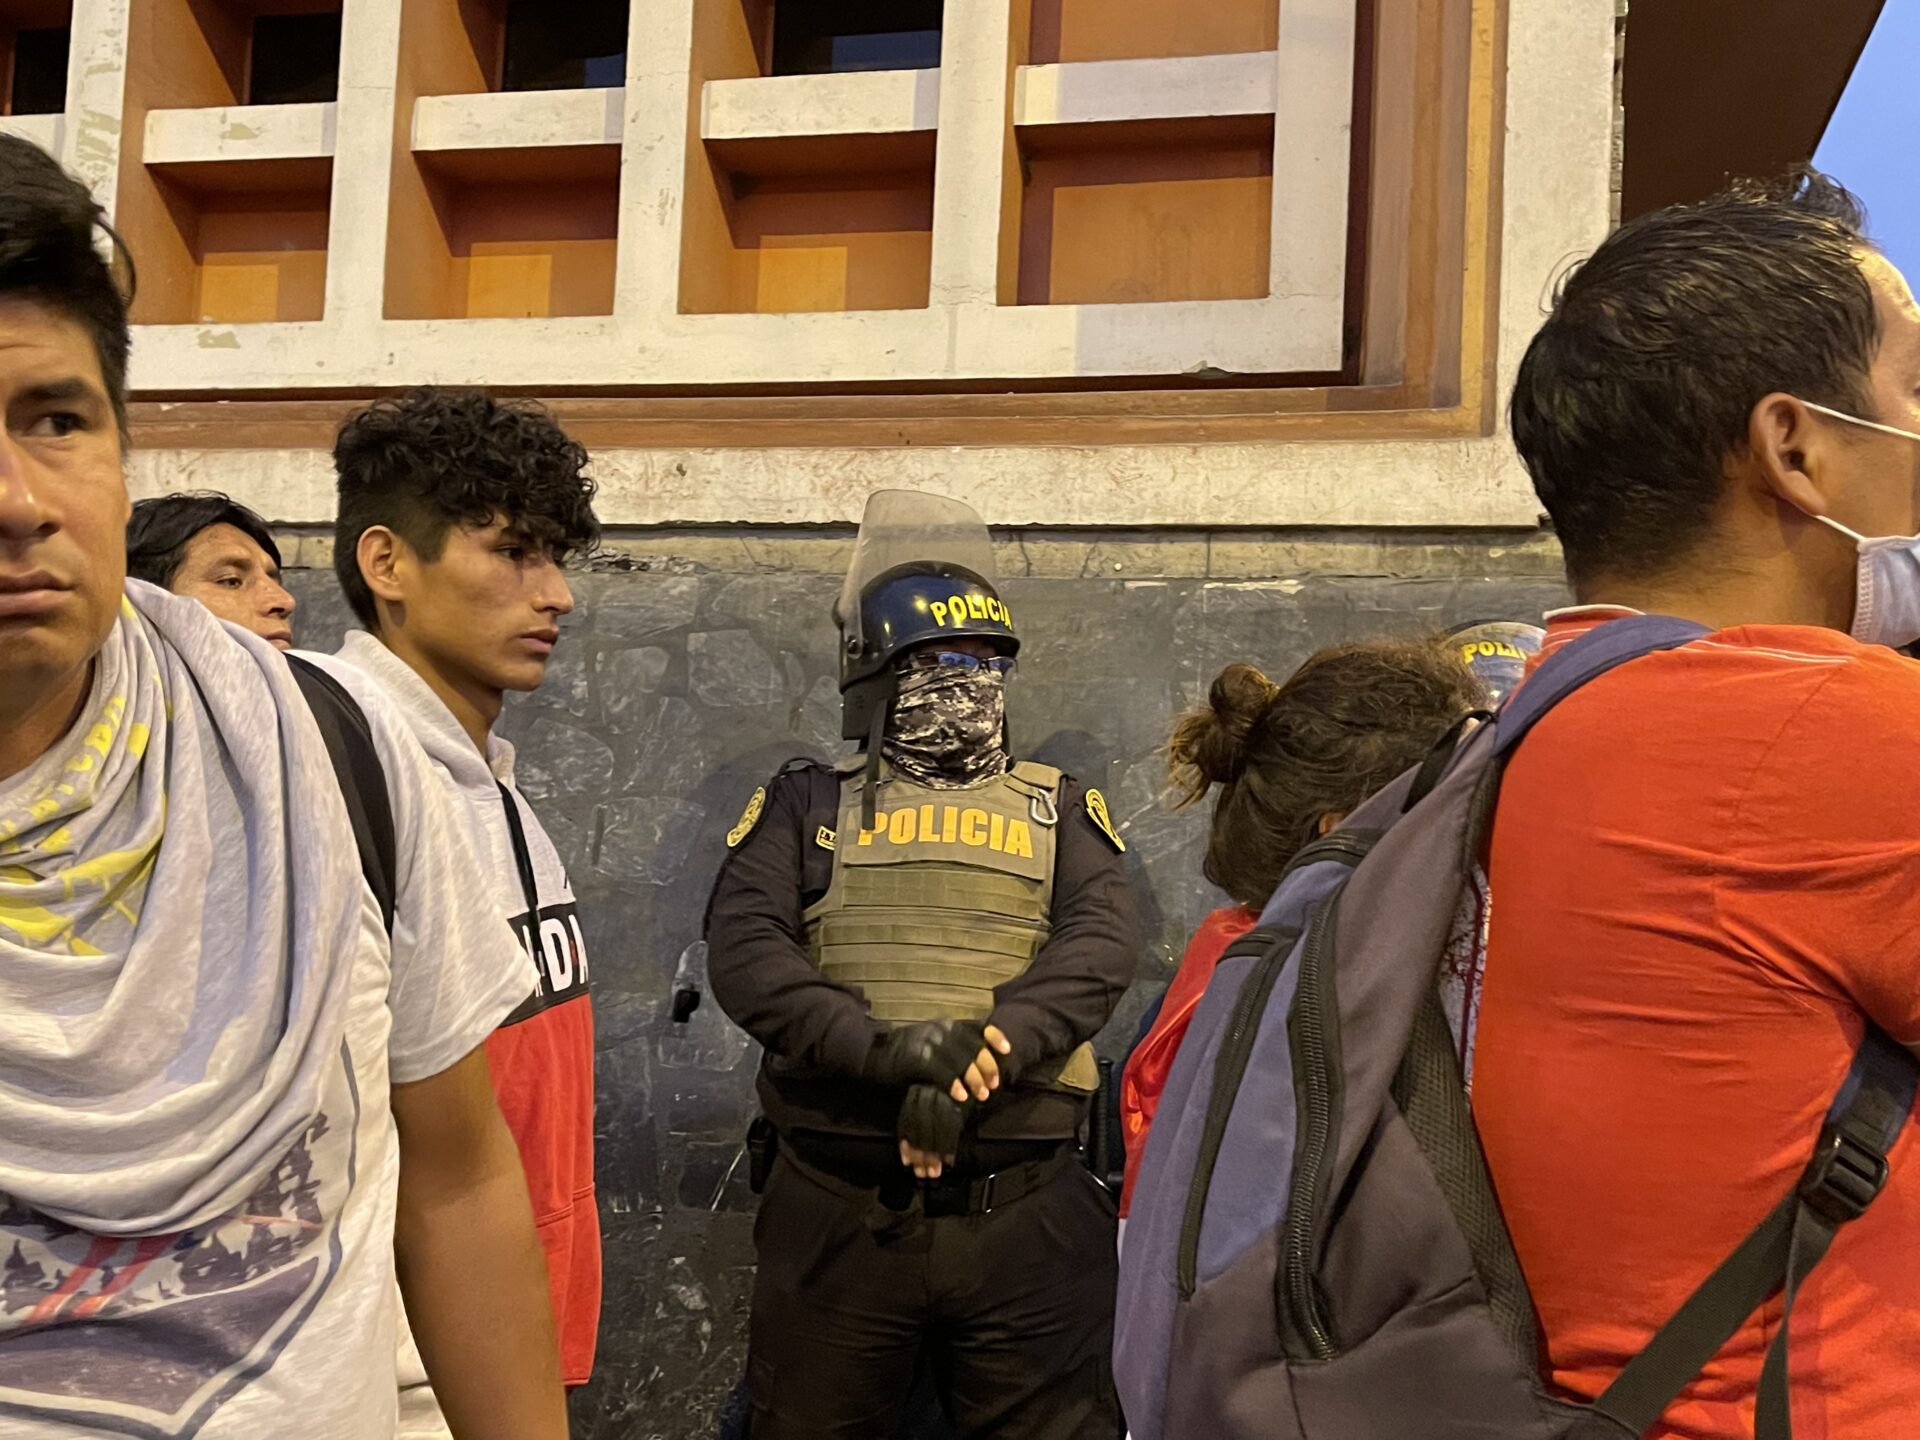 Das Polizeiaufgebot war bei allen Protesten in Lima sehr gross. Zum Teil kam es zu richtiggehenden Aufmärschen. Eine Untersuchung von Amnesty International ergab, dass die Polizei bei ihrem Vorgehen gegen die Demonstranten schlimmer Menschenrechtsverletzungen schuldig gemacht ©Vera Lentz